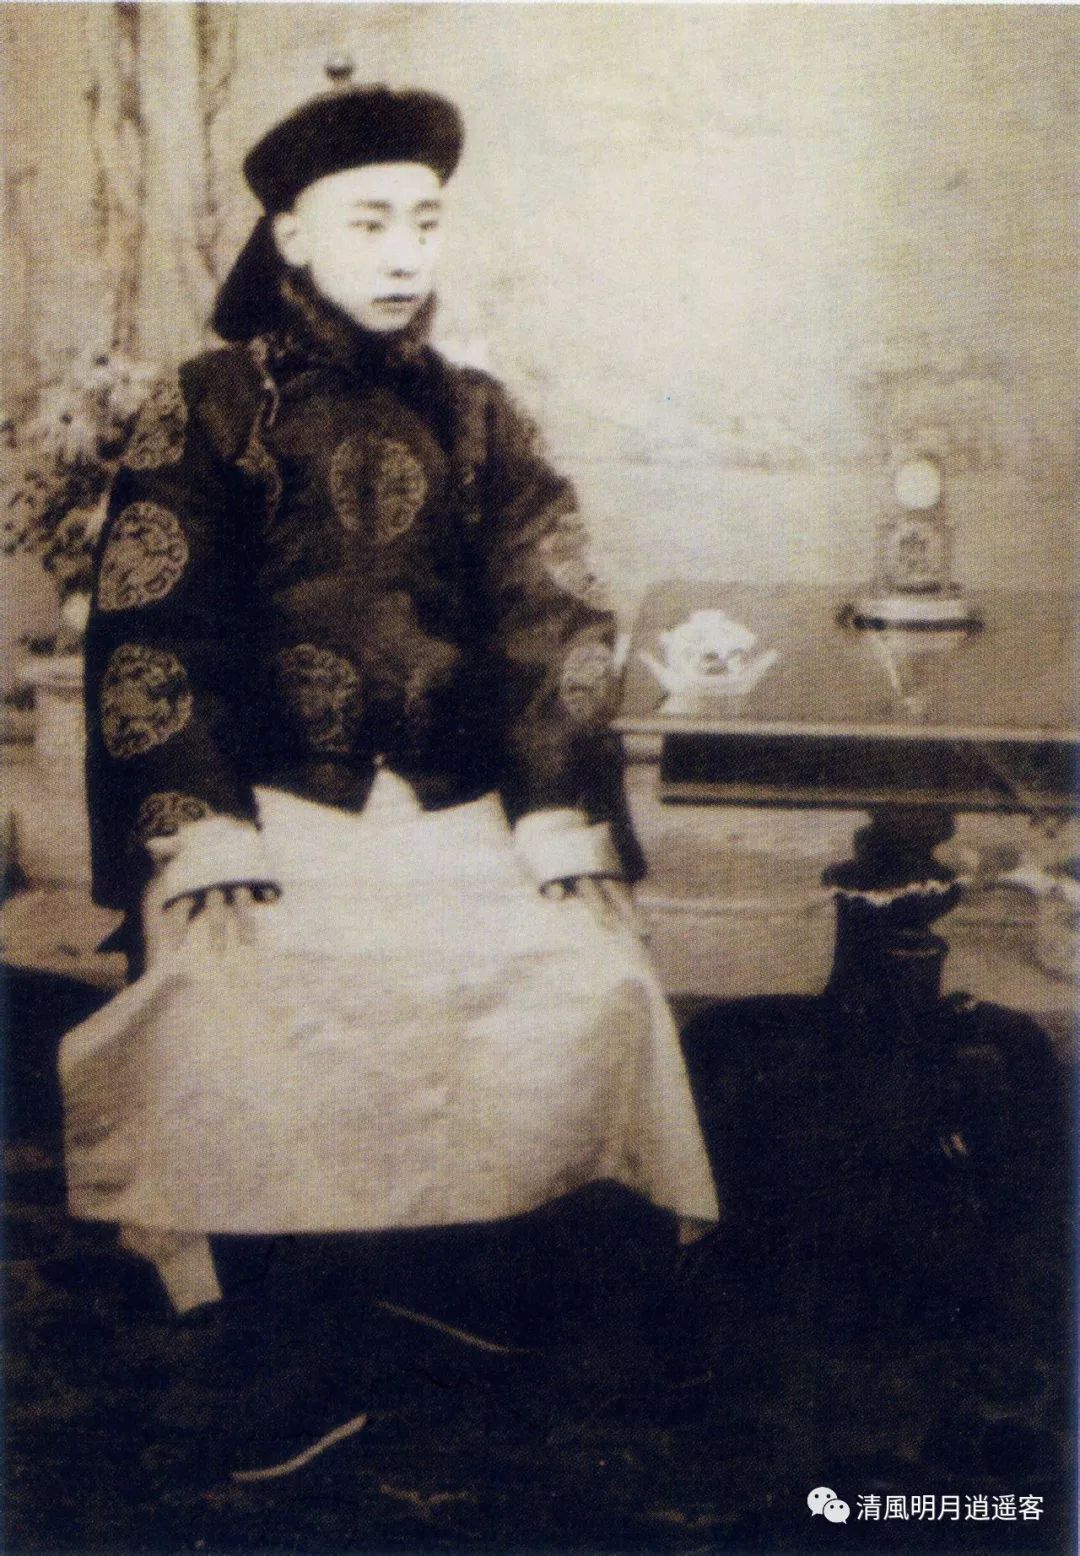 Le dernier empereur de Chine Puyi (溥儀 1908-1912) - Ecole du lion d'or